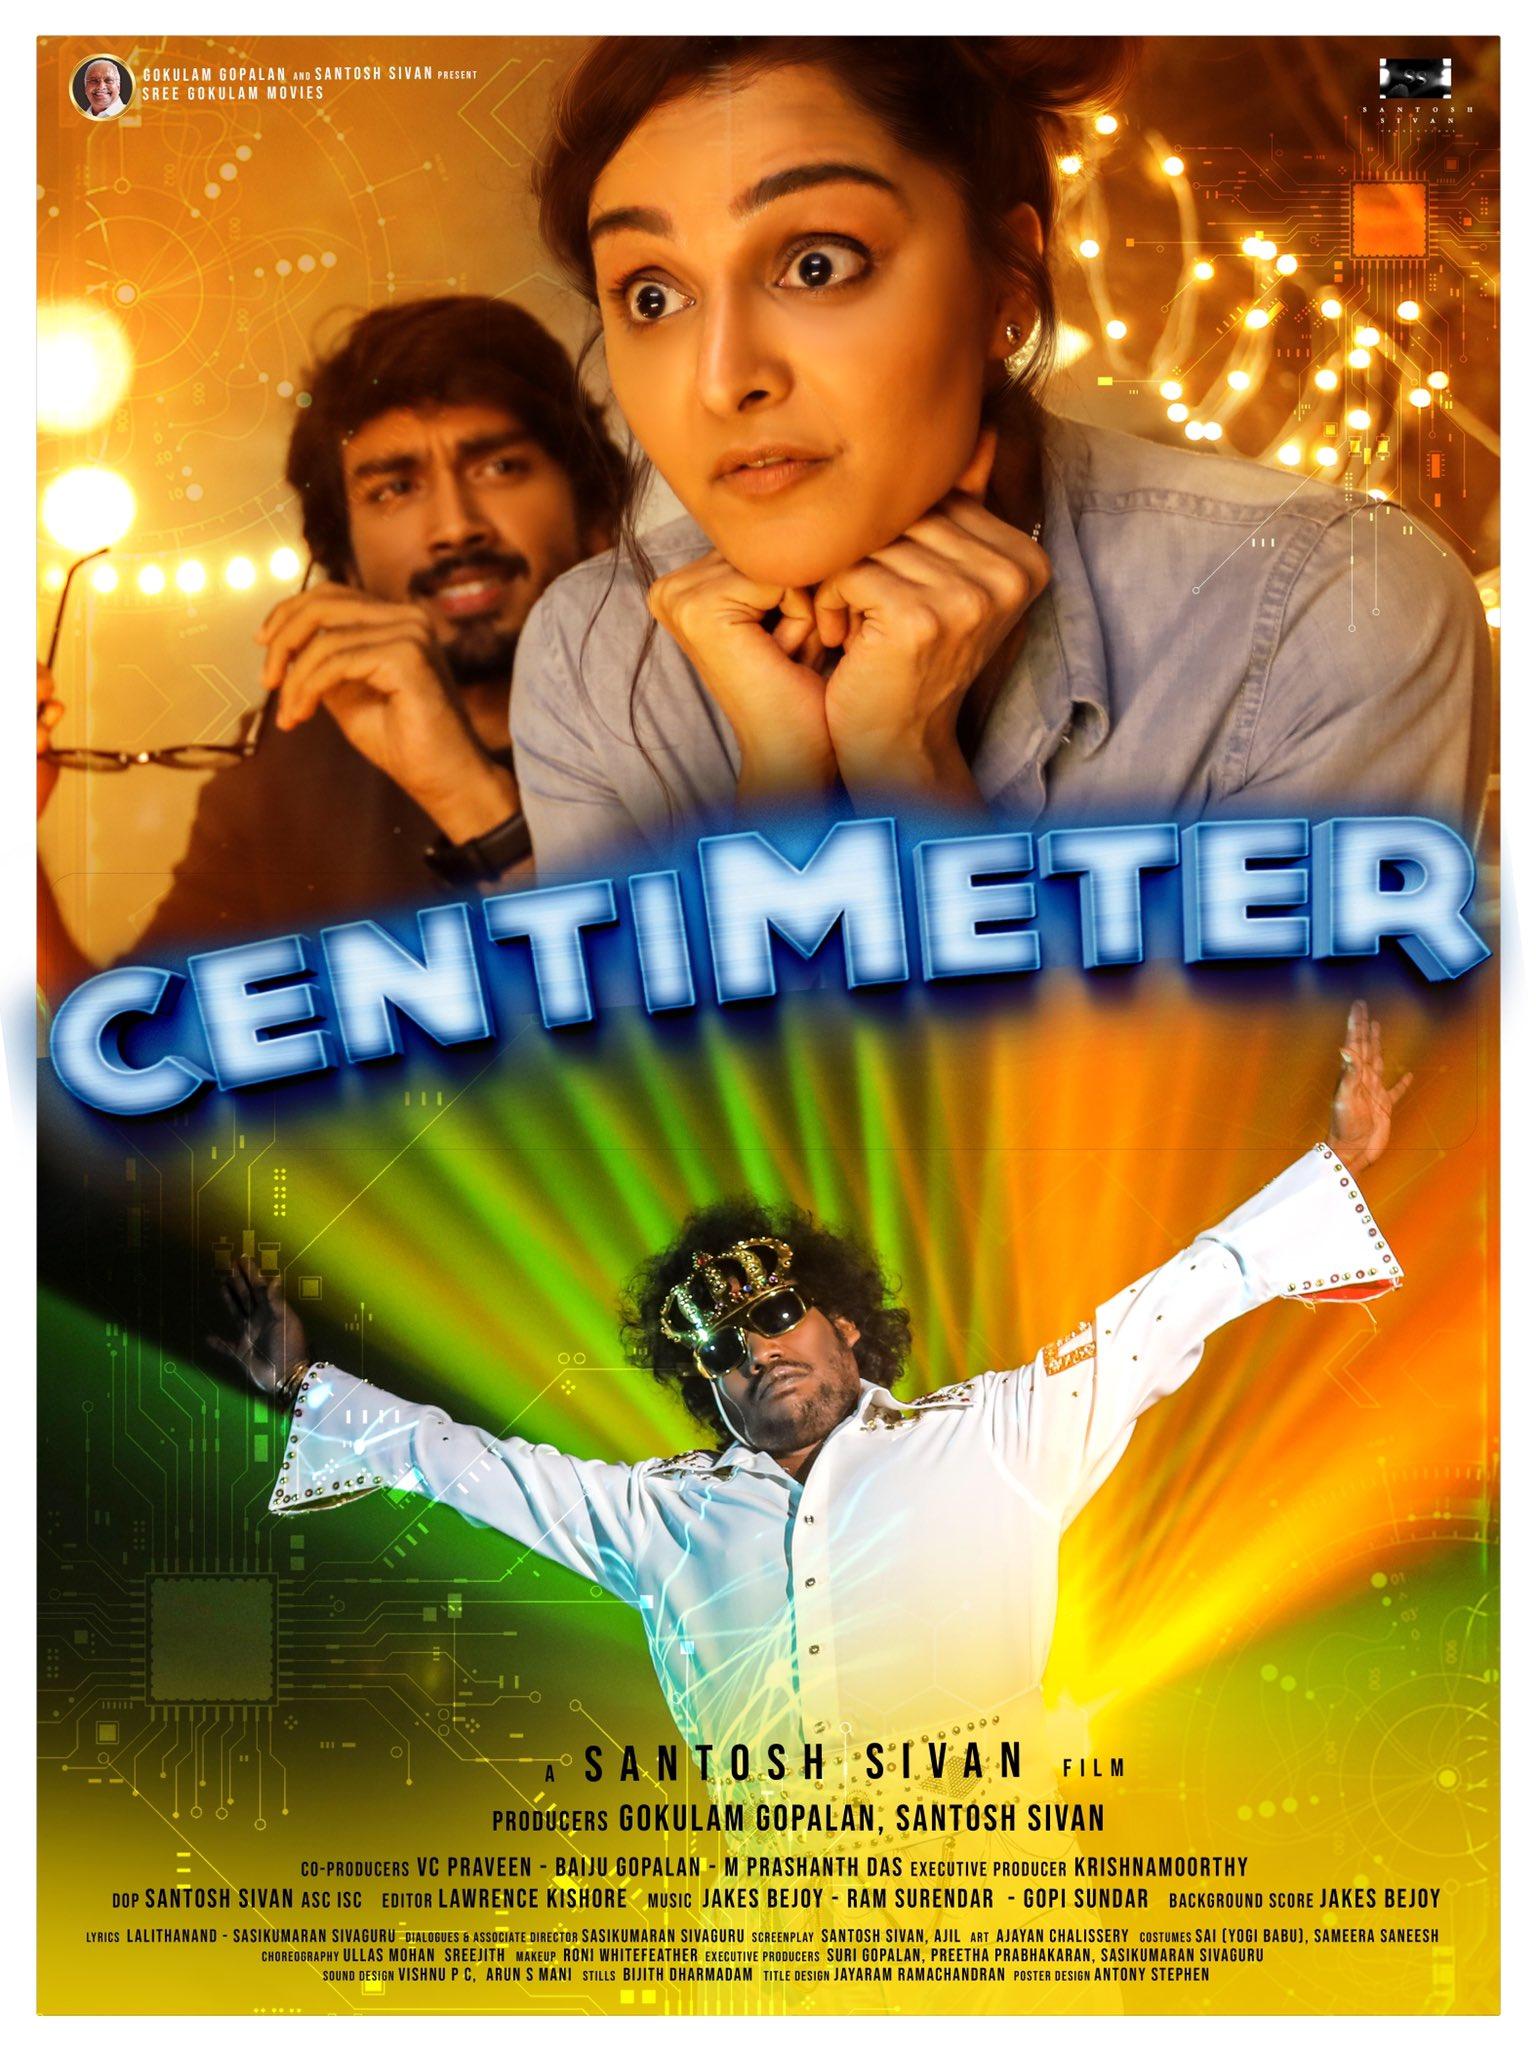 centimeter tamil movie review in tamil